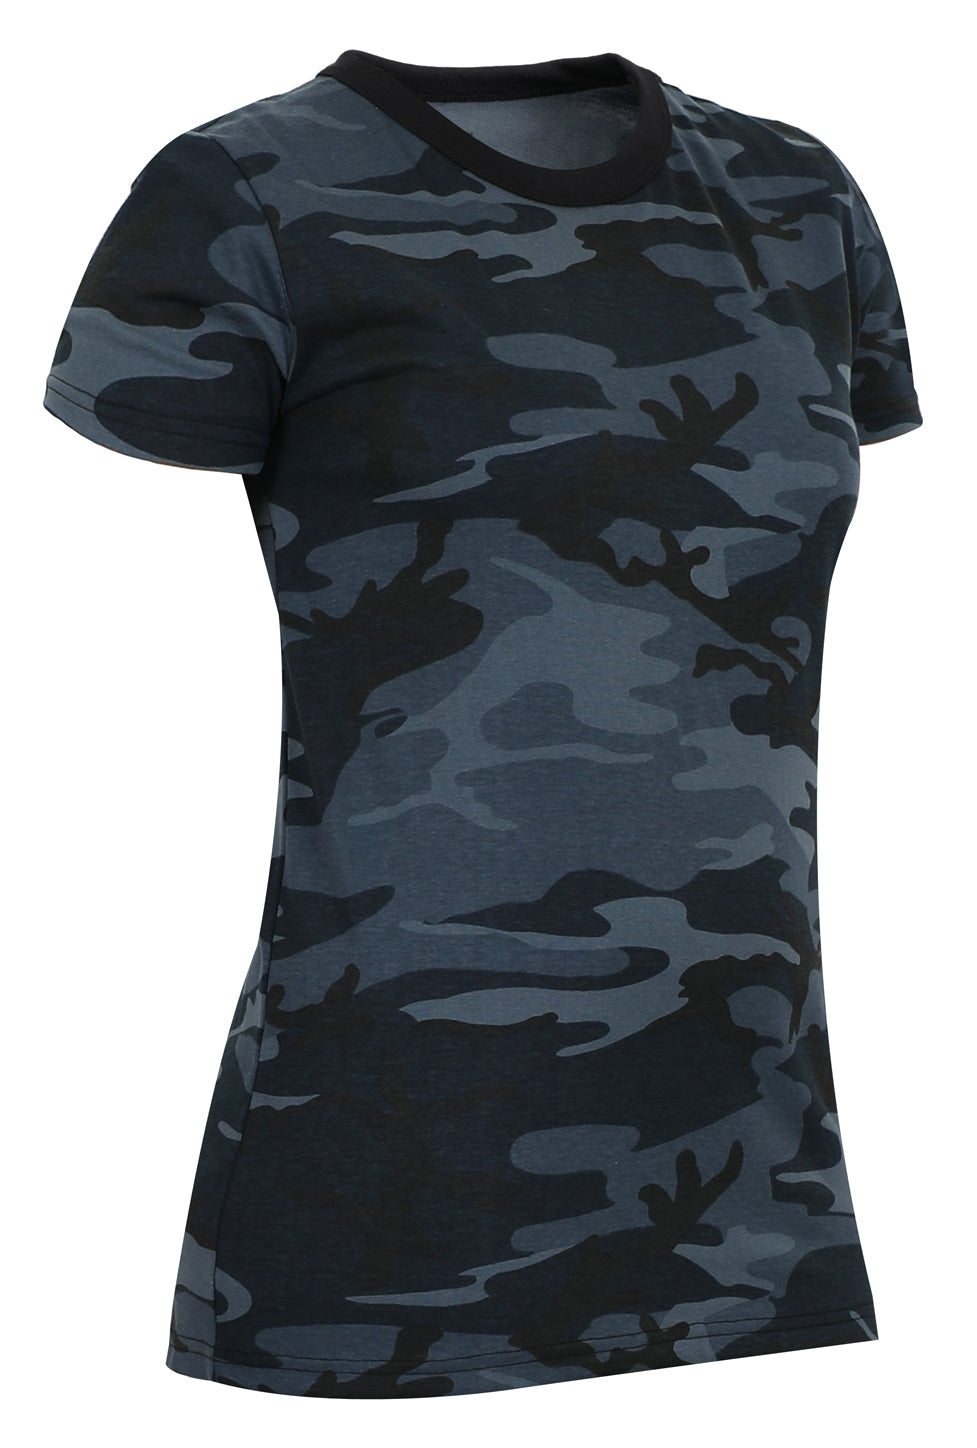 Rothco Womens Long Length Camo T-Shirt - Woodland Camo XL